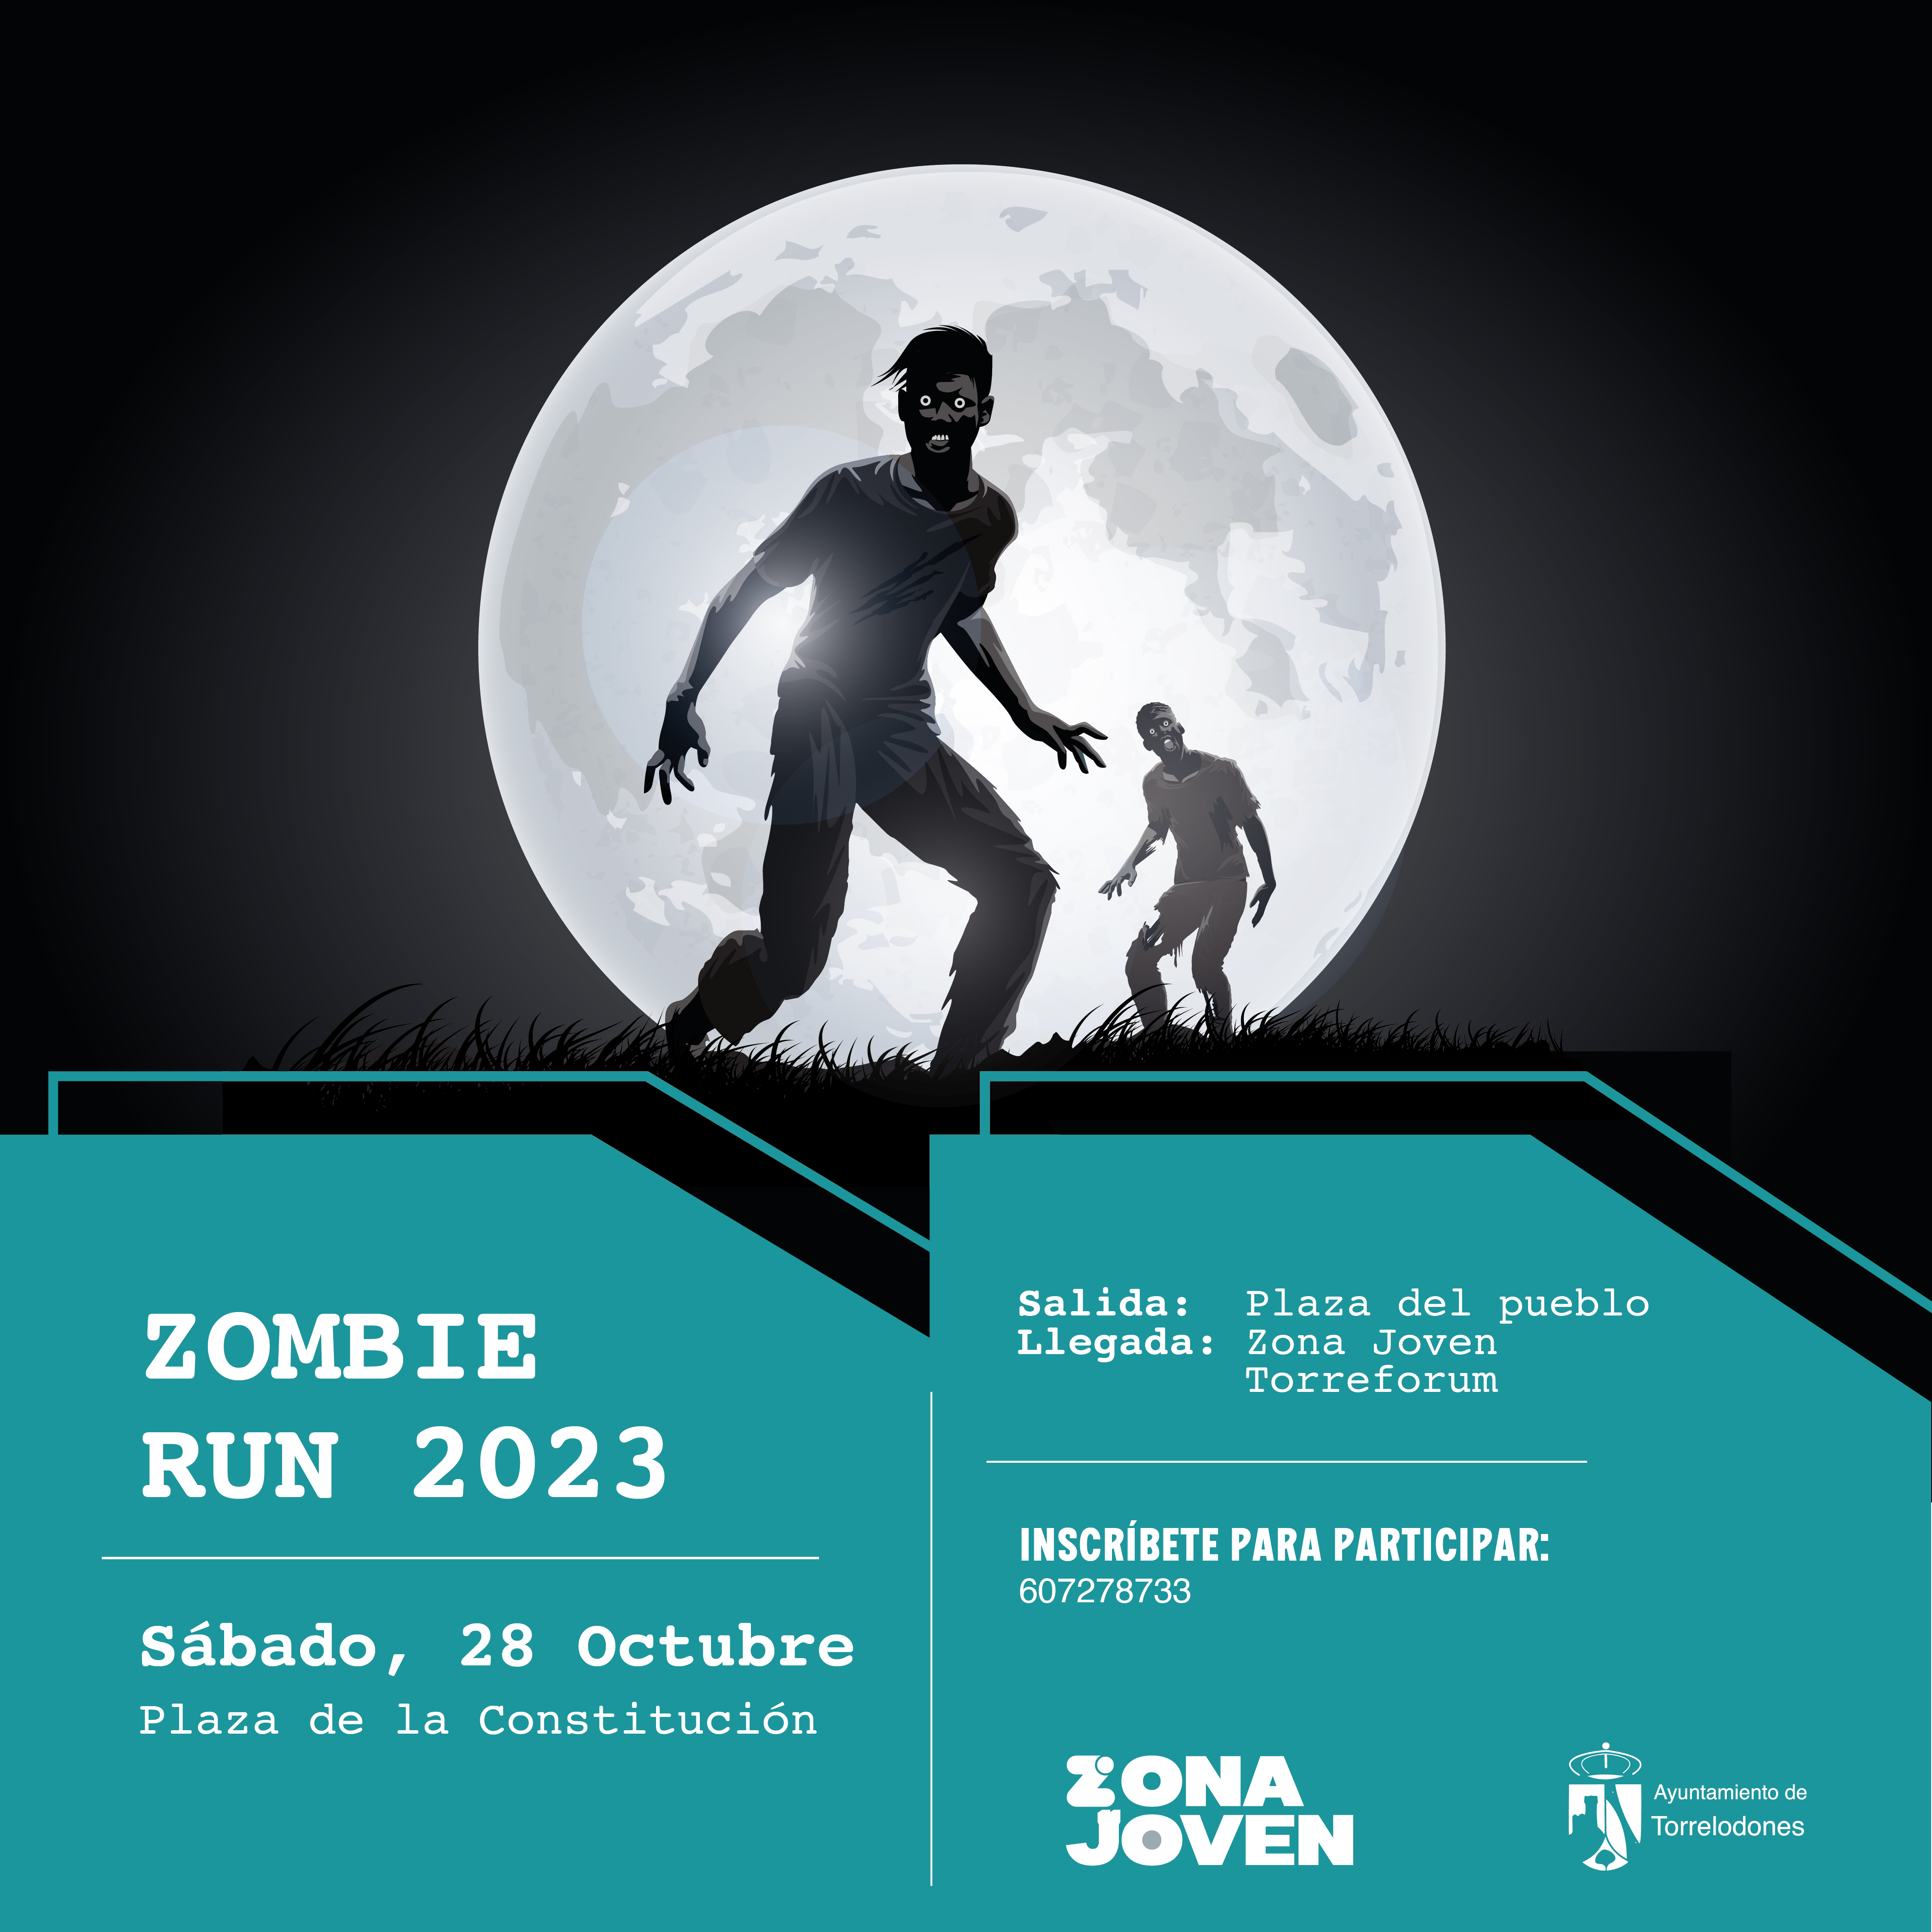 La Zona joven de Torrelodones organiza un “Zombi run” con fines benéficos